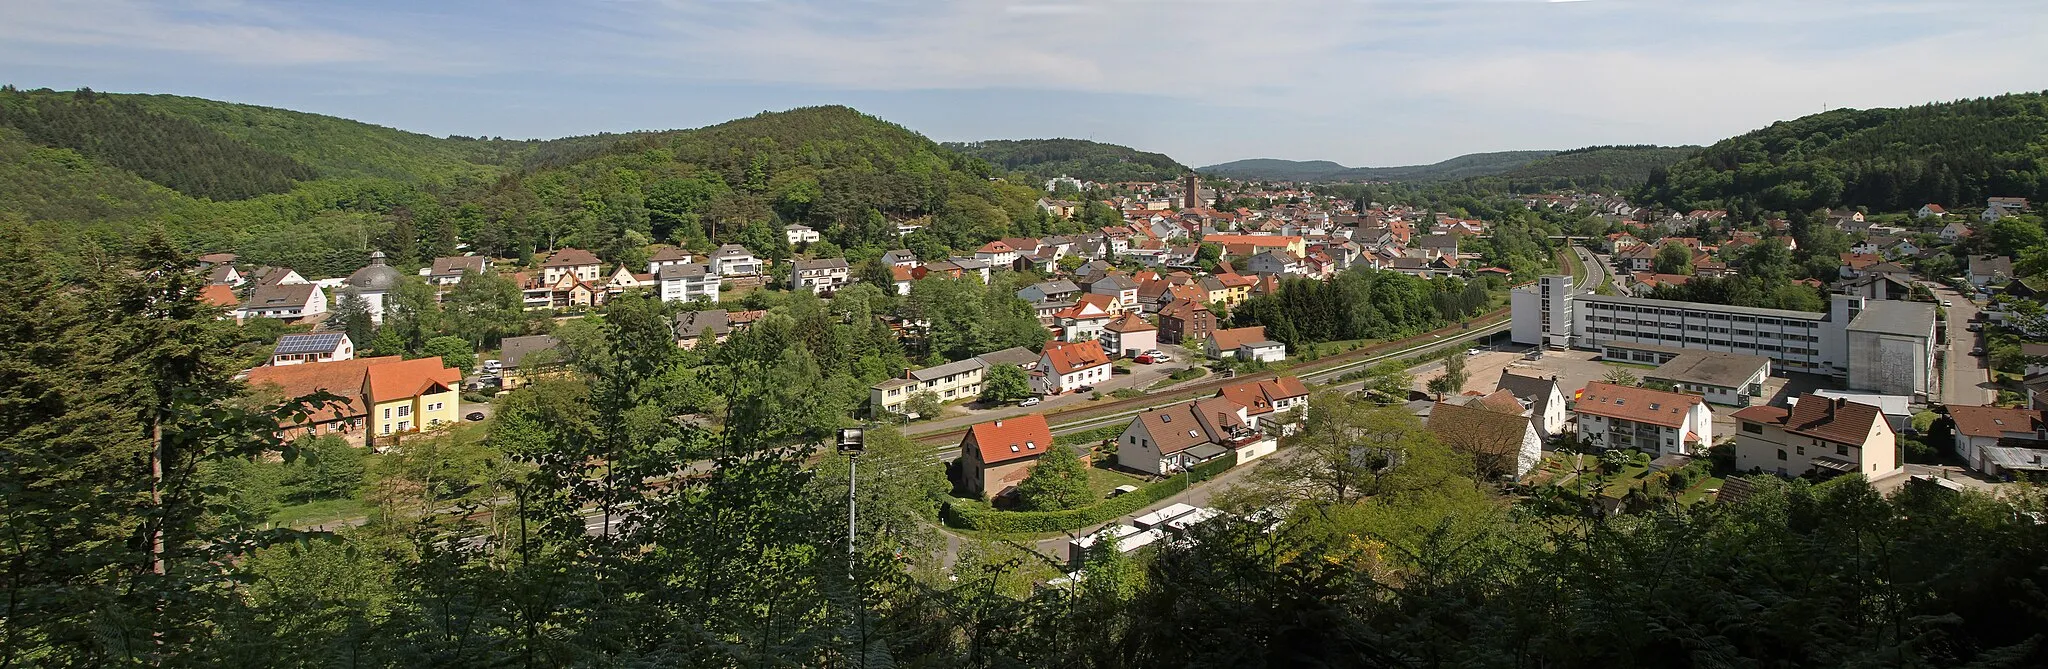 Photo showing: Rodalben, Stadt im Landkreis Südwestpfalz. Panorama von der alten Burg.